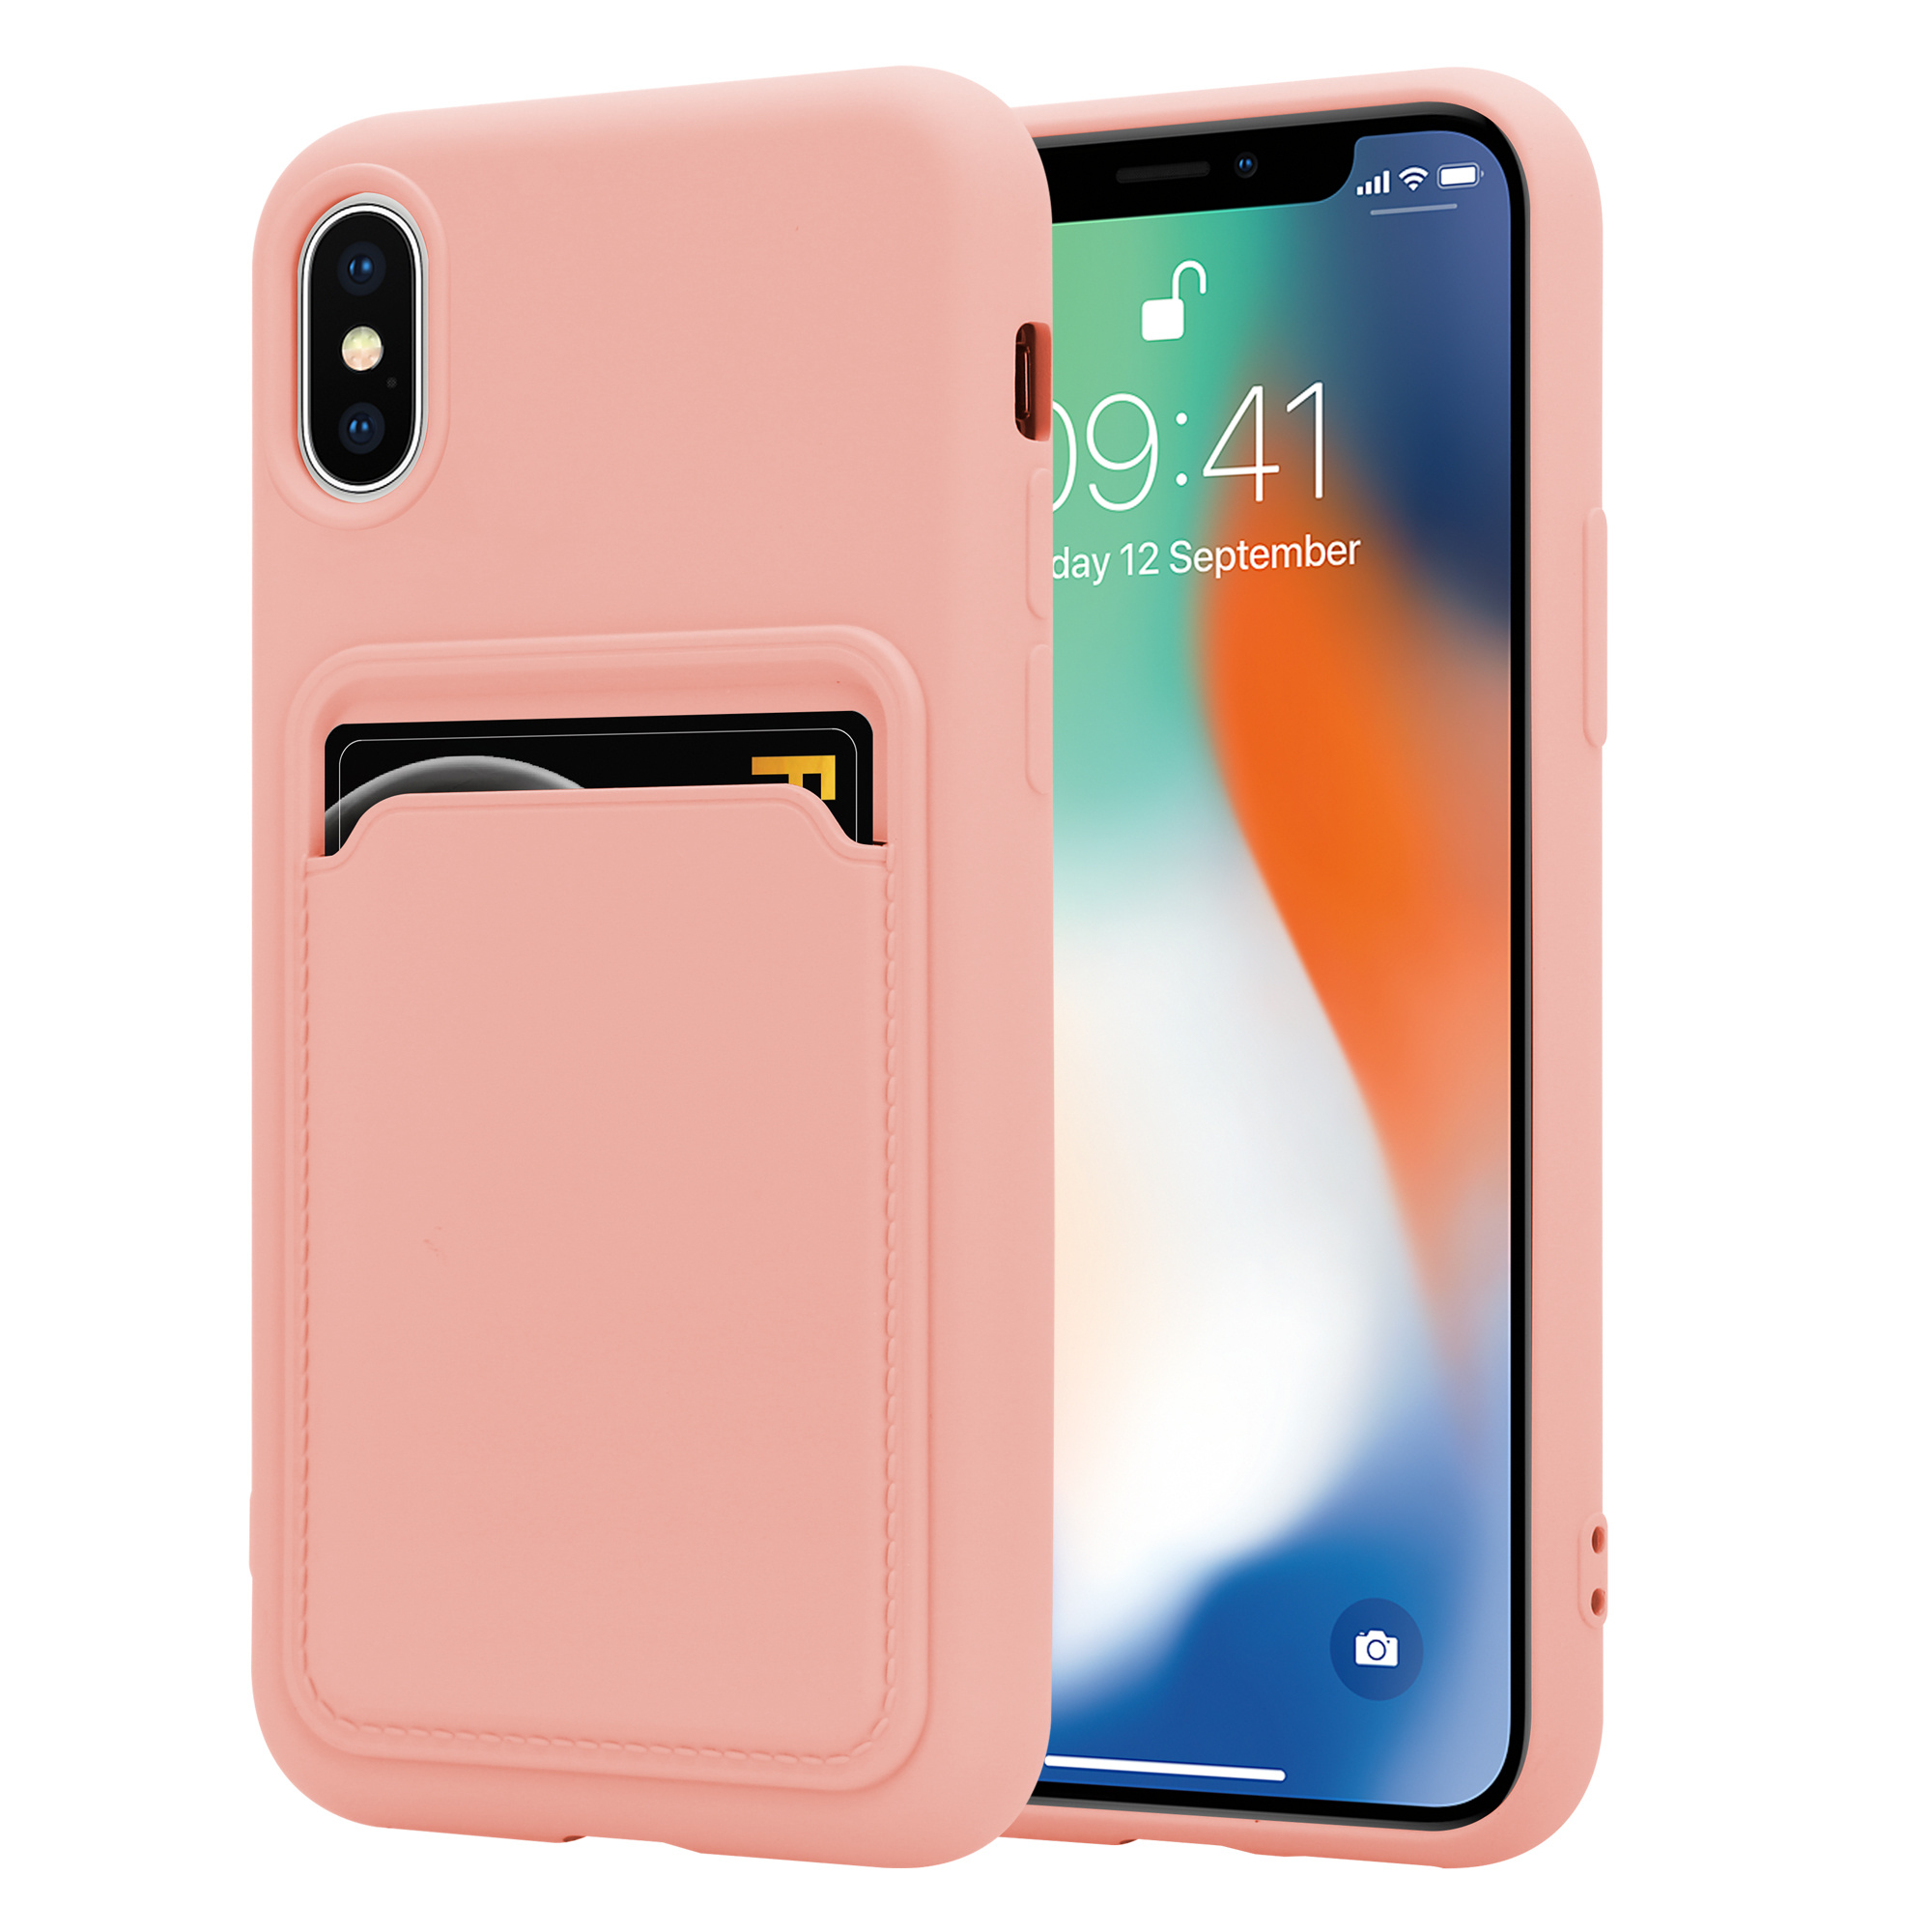 vergeetachtig Sandy compenseren iPhone X / Xs siliconen hoesje met pasjeshouder (roze) - Phone-Factory